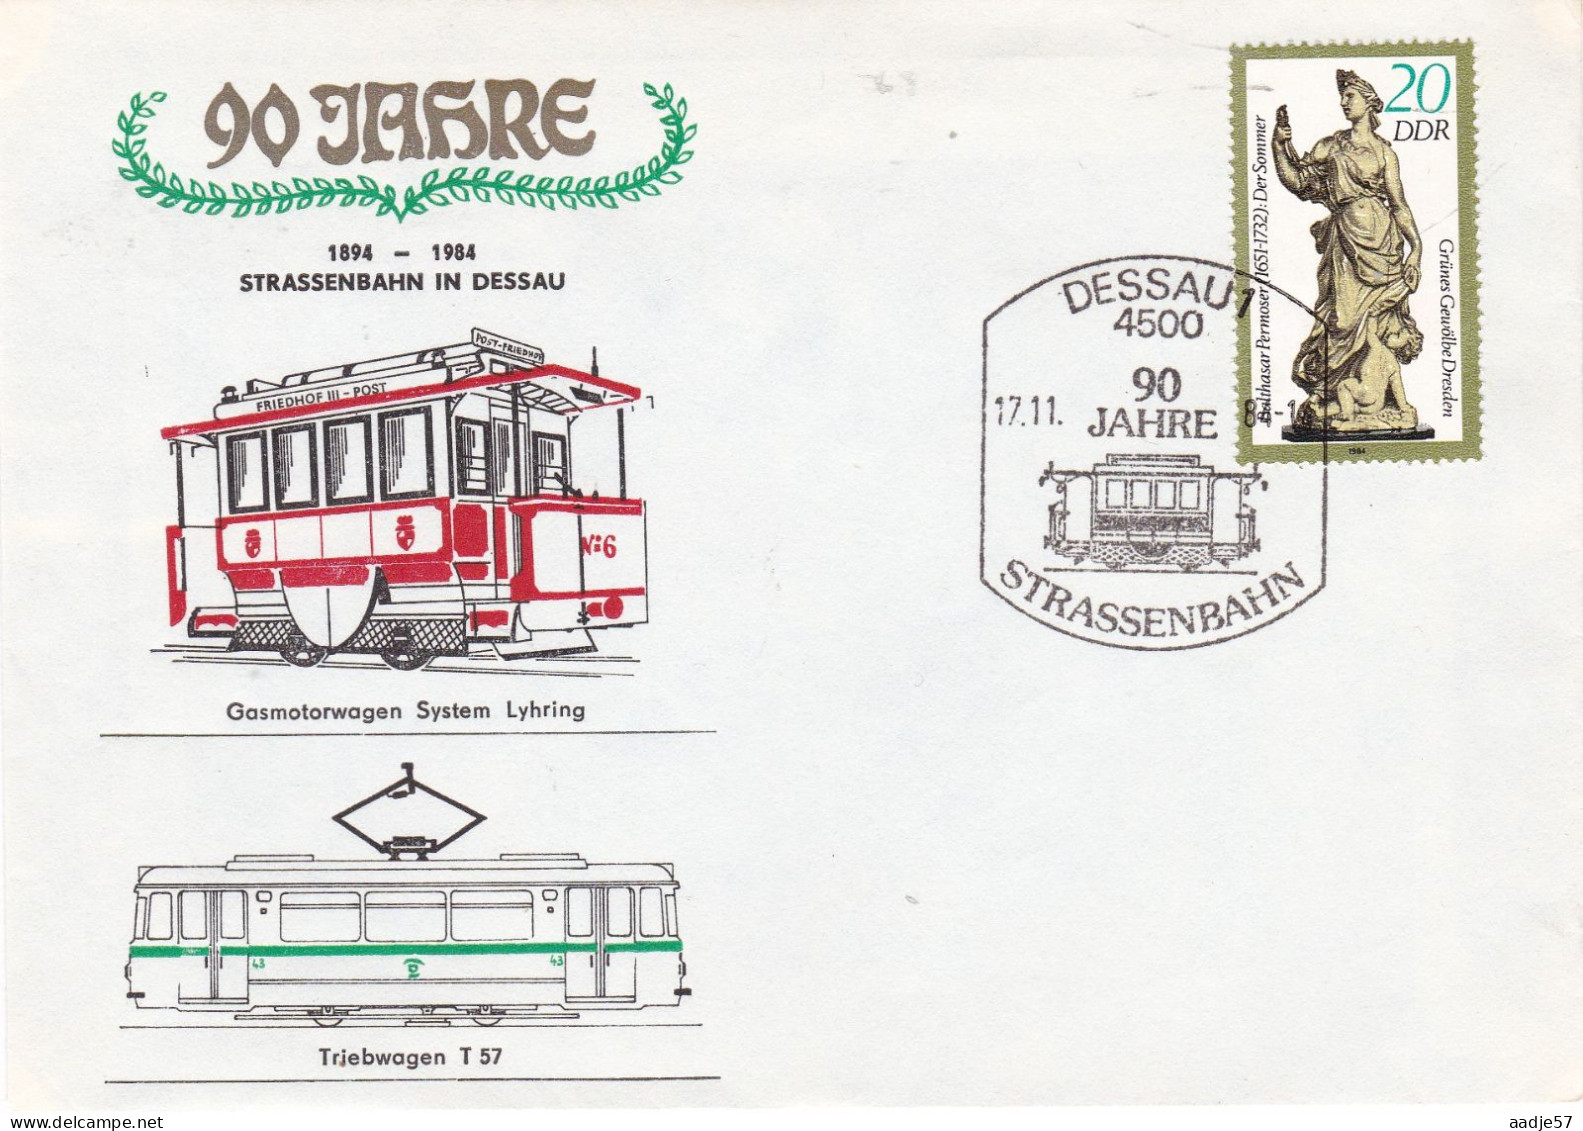 Germany DDR 1984 90 Jahre Strassenbahn In Dessau  17-11-1984 - Tranvie